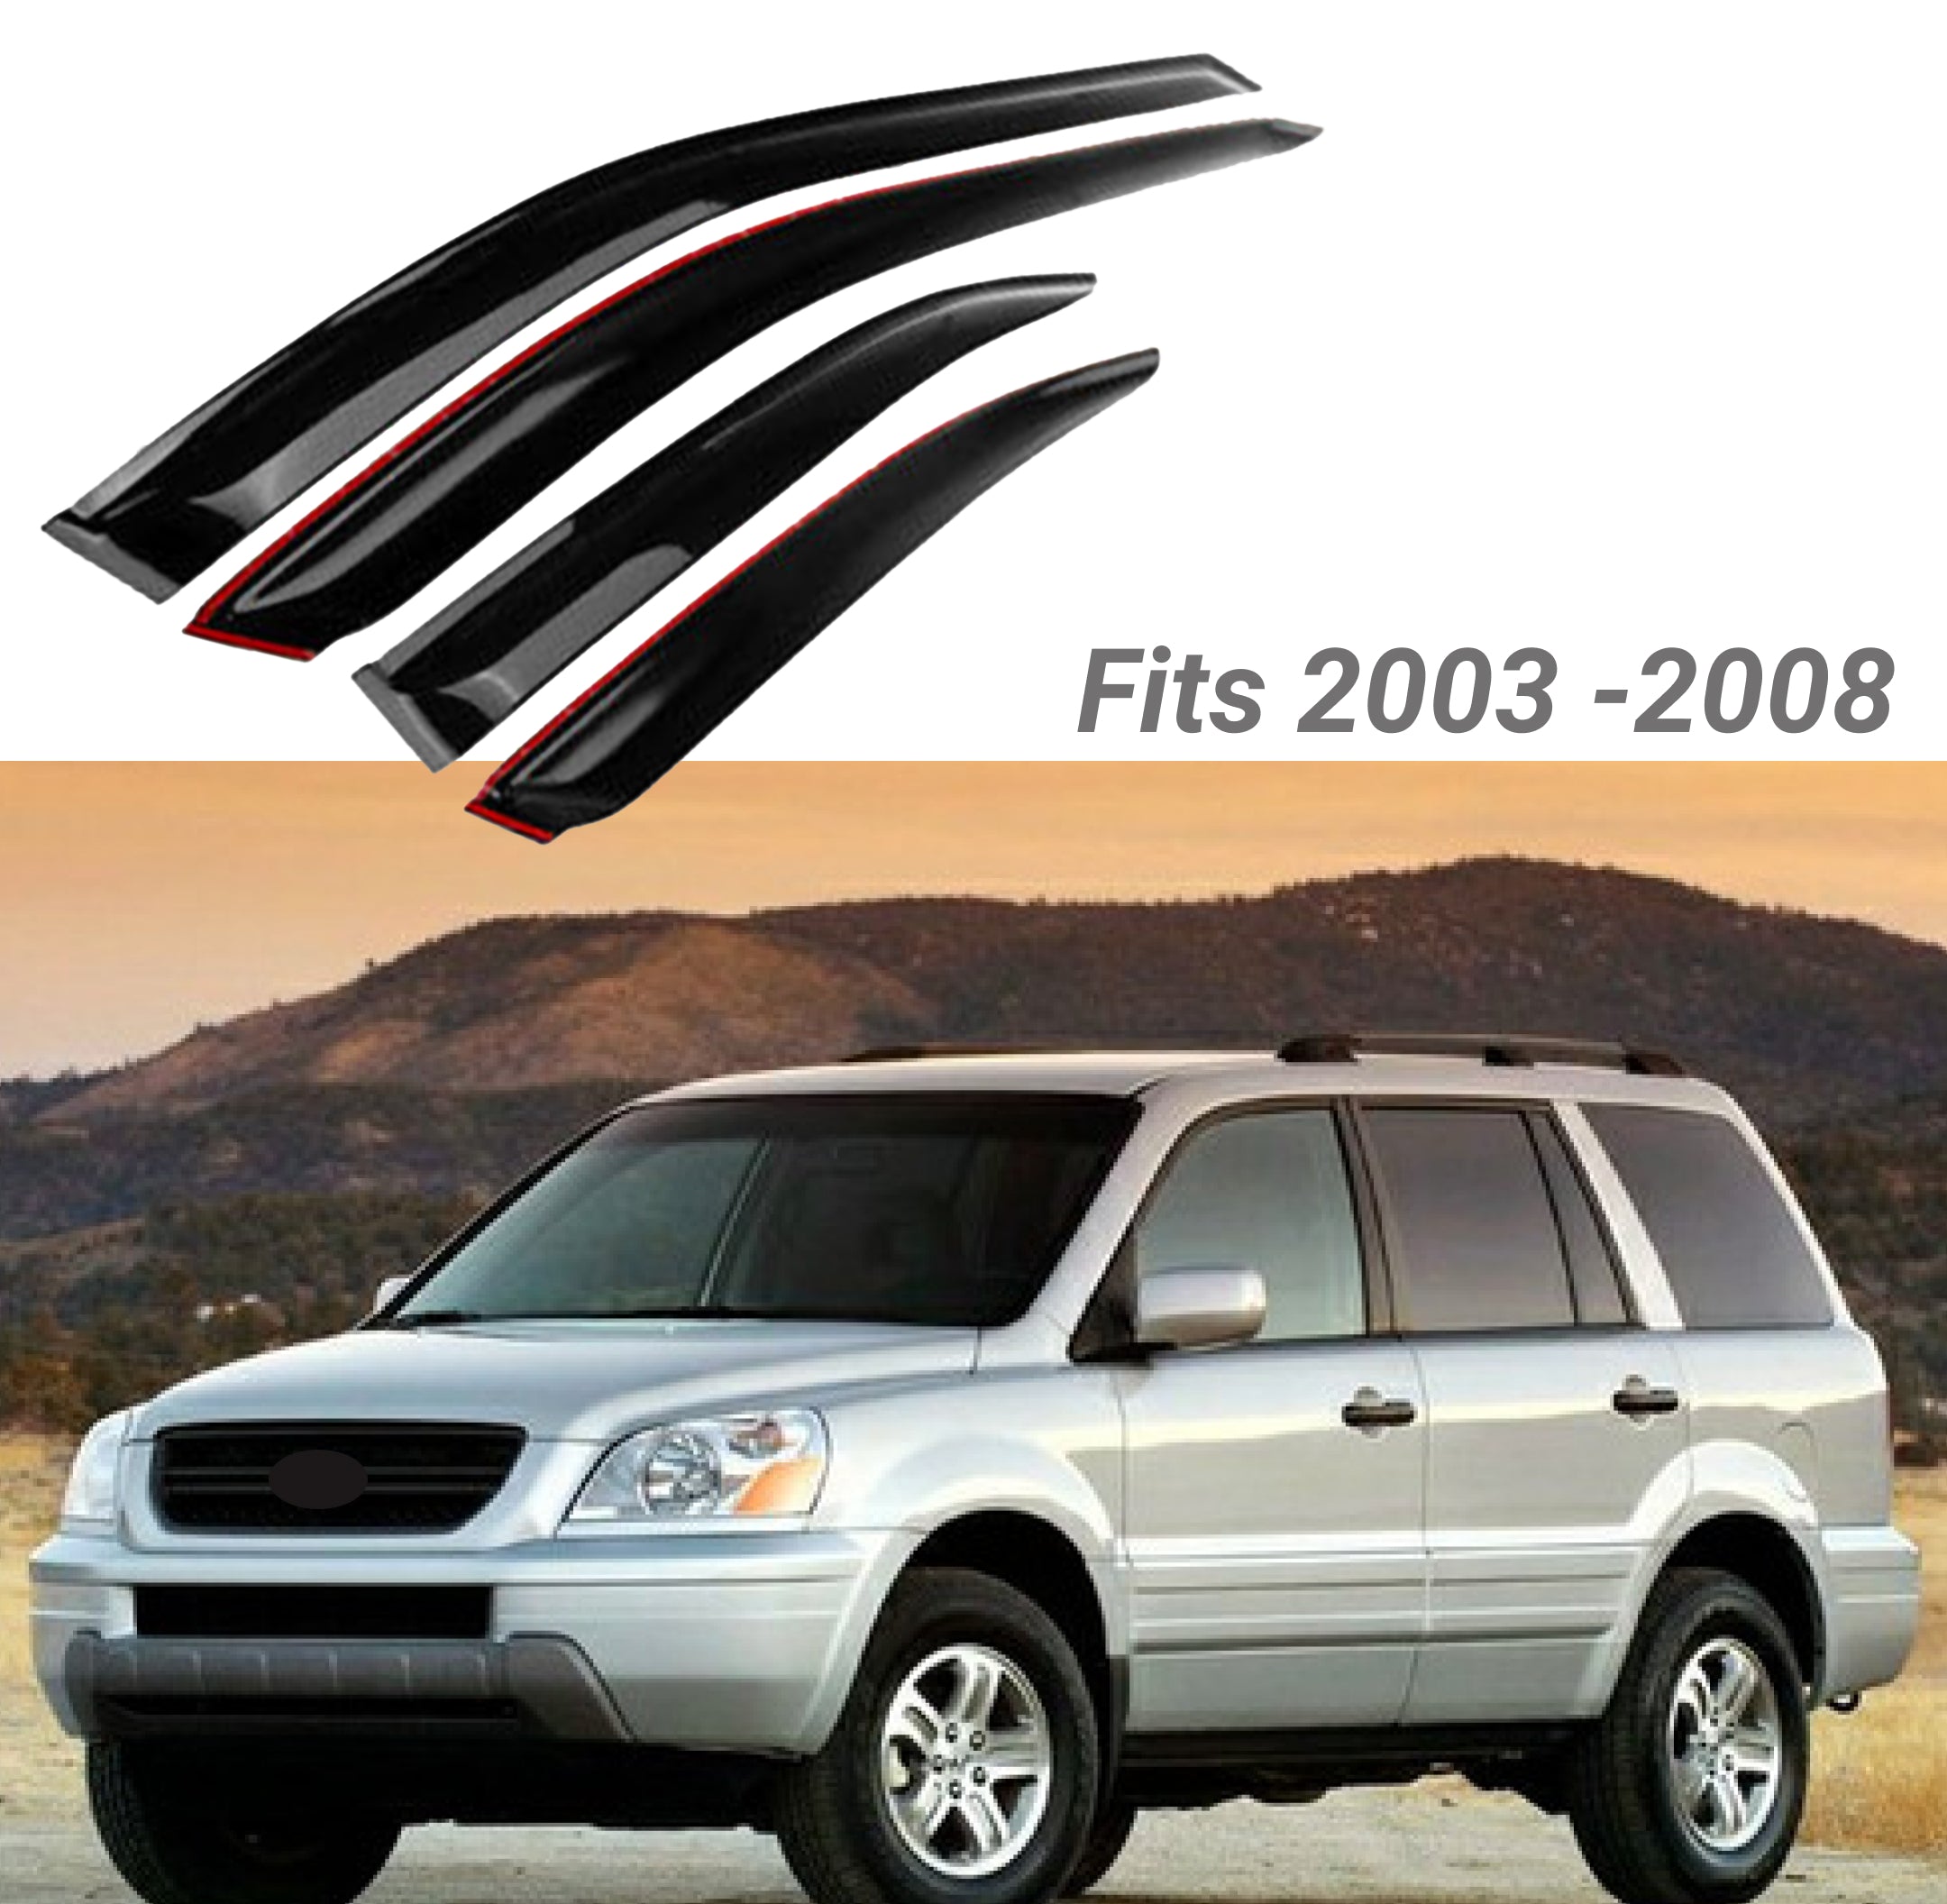 Fit 2003-2008 Honda Pilot OE Style Vent Window Visors Rain Sun Wind Guards Shade Deflectors - 0